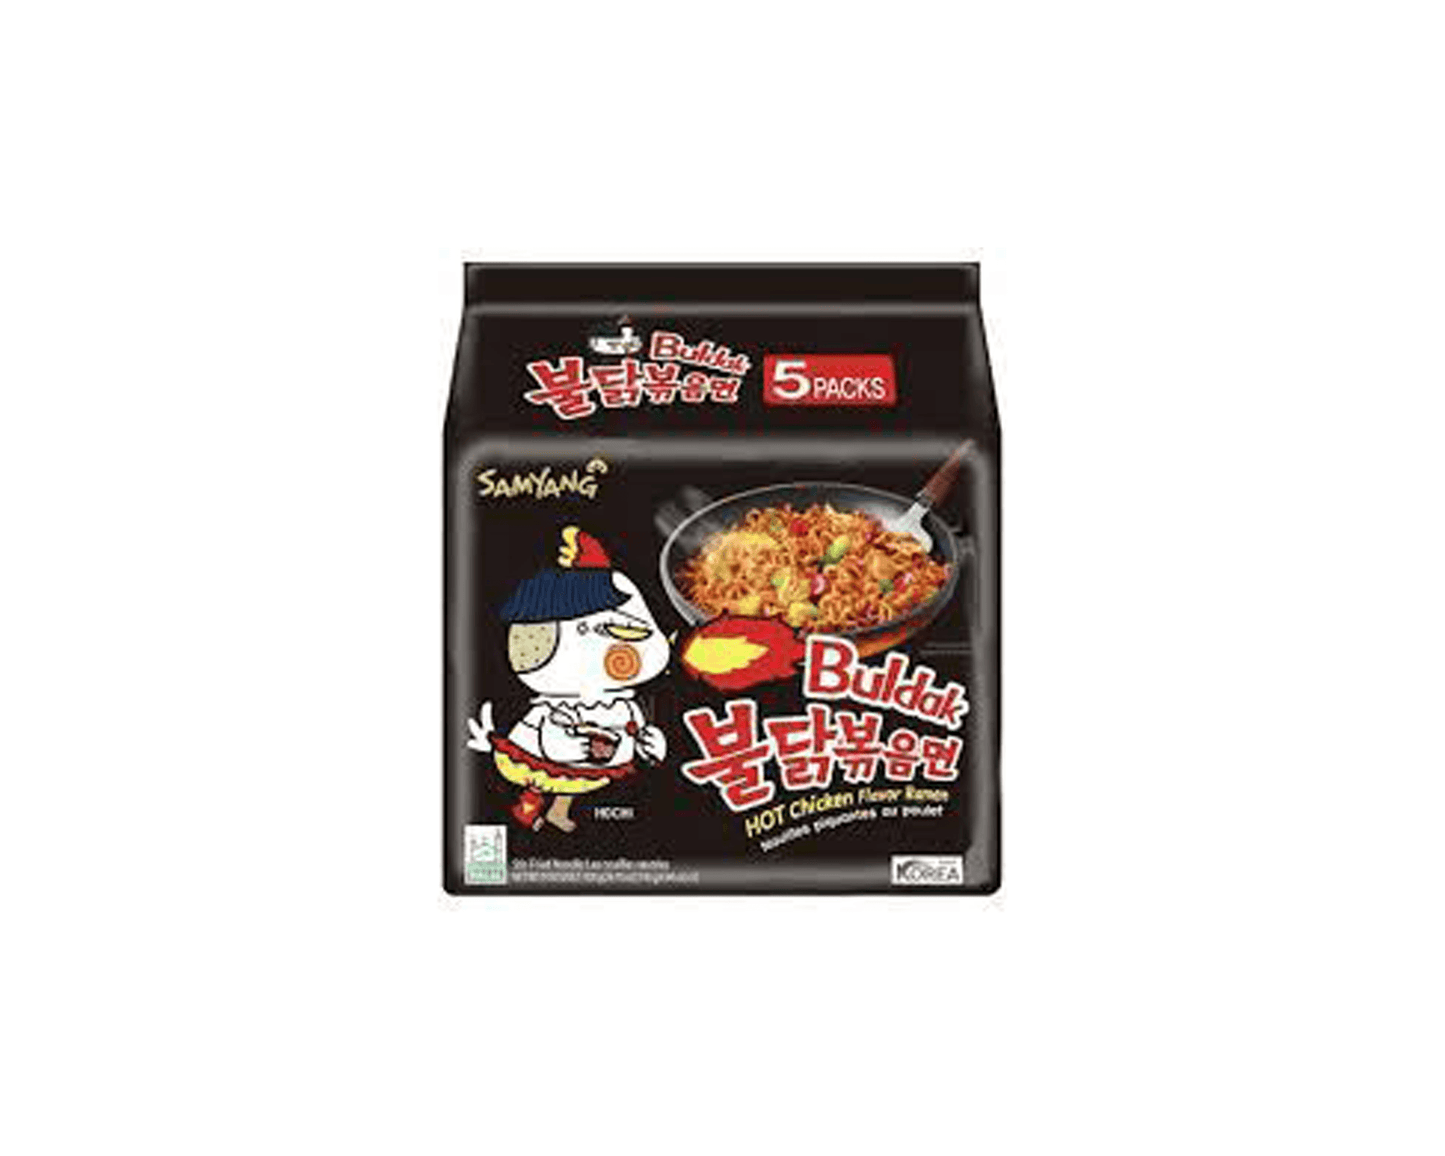 Samyang Buldak Hot Chicken Ramen Noodles 5 Pack - Indian Spices